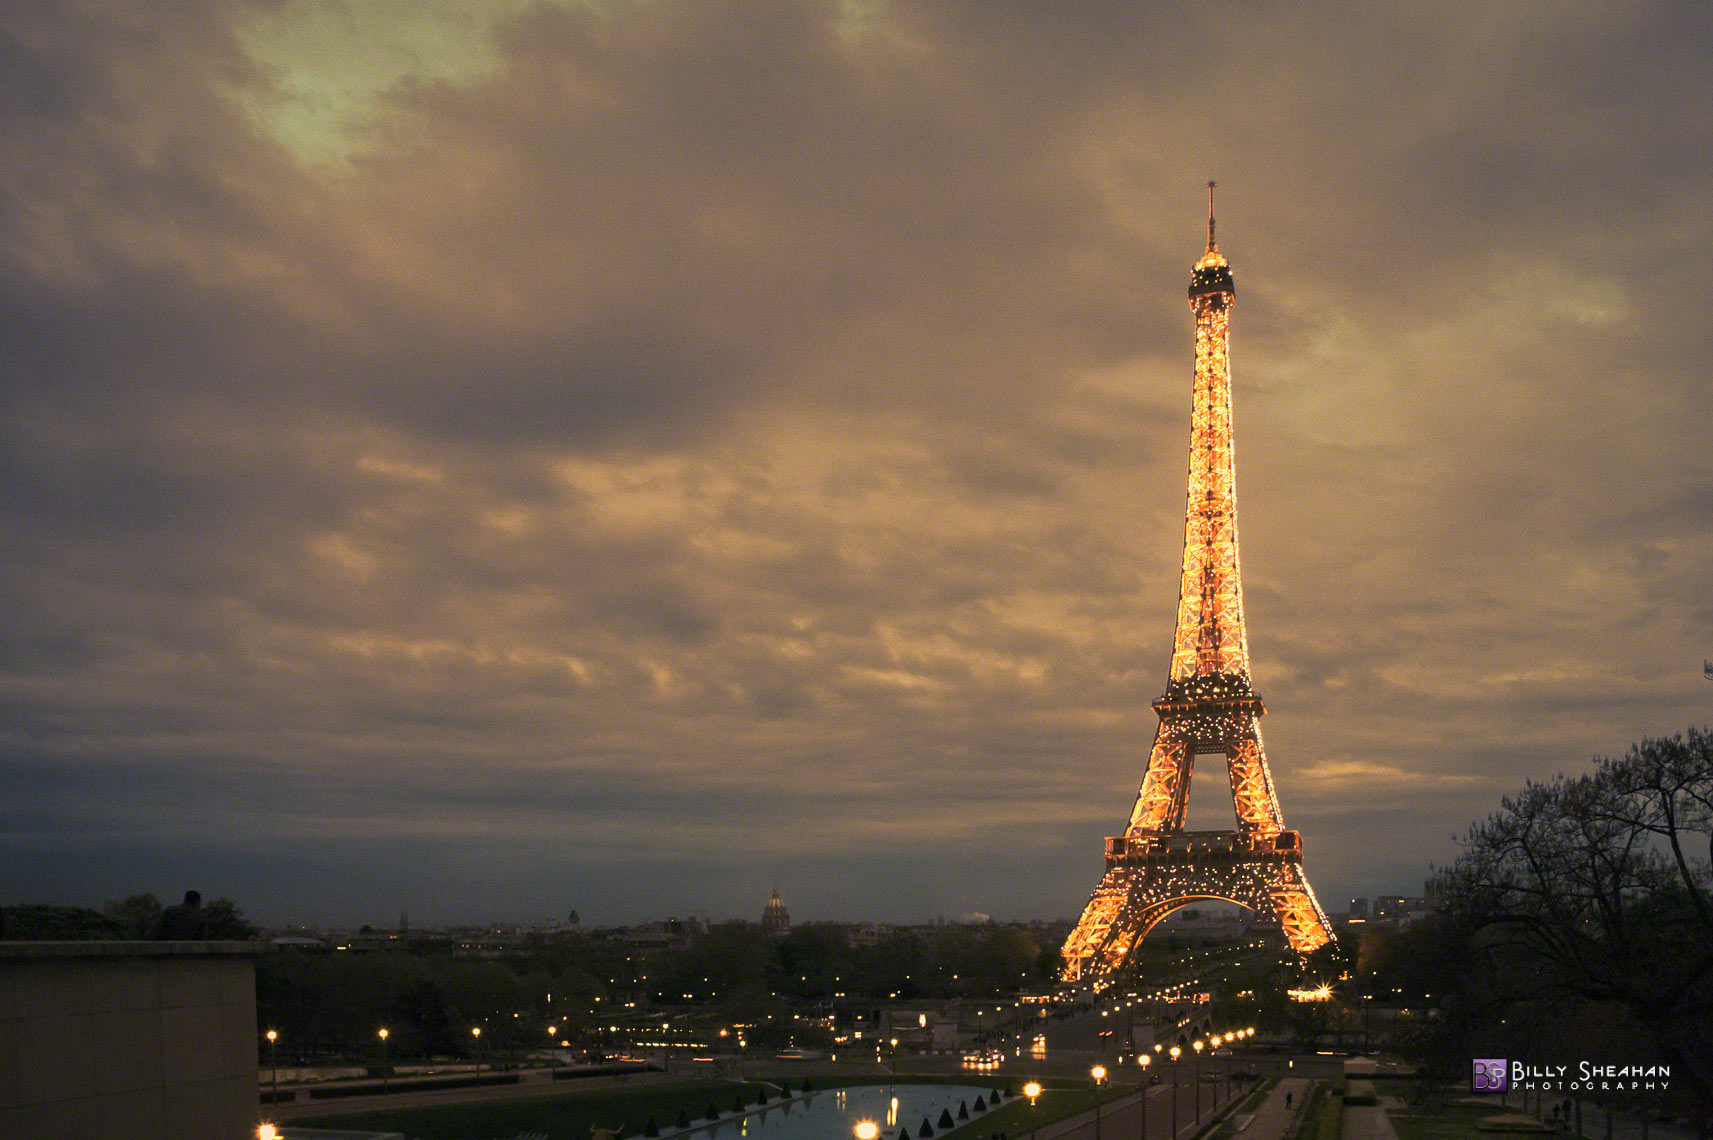 Eiffel_Tower_at_Place_de_Trocadero__Paris__France_Paris2008_24Apr2008_0506_7_8_C_D